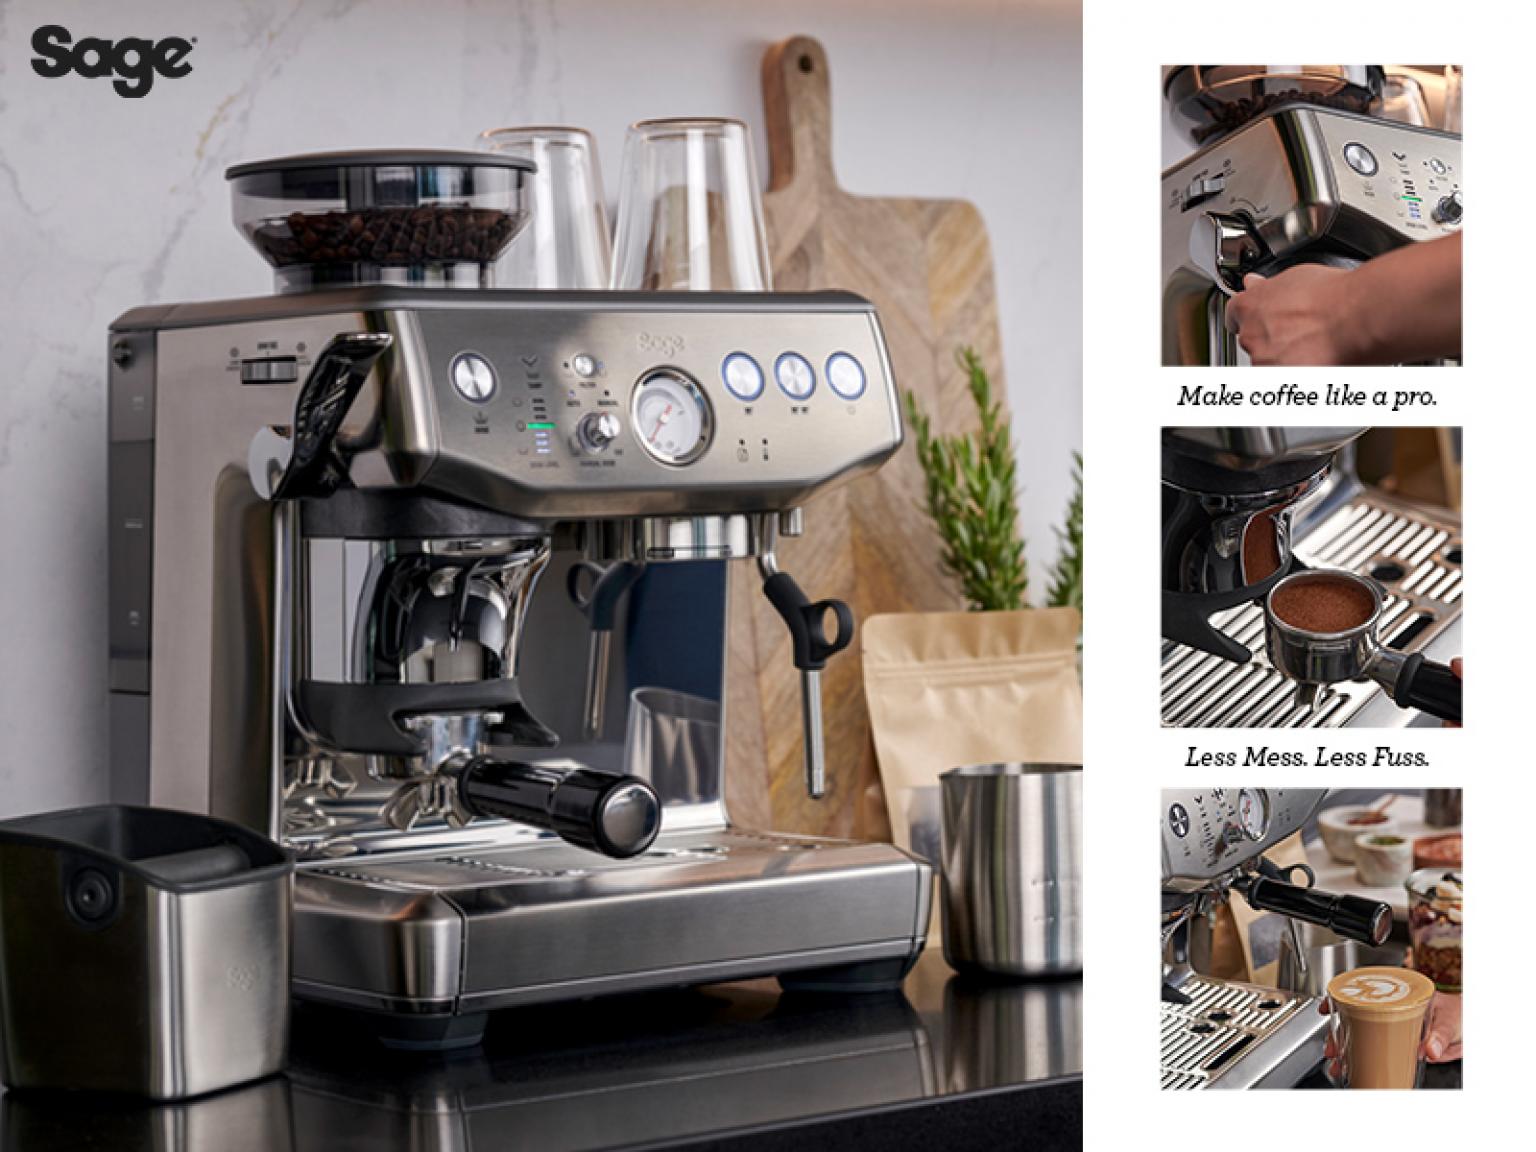 Søjle Ved analyse Markedets fedeste og mest geniale espressomaskine